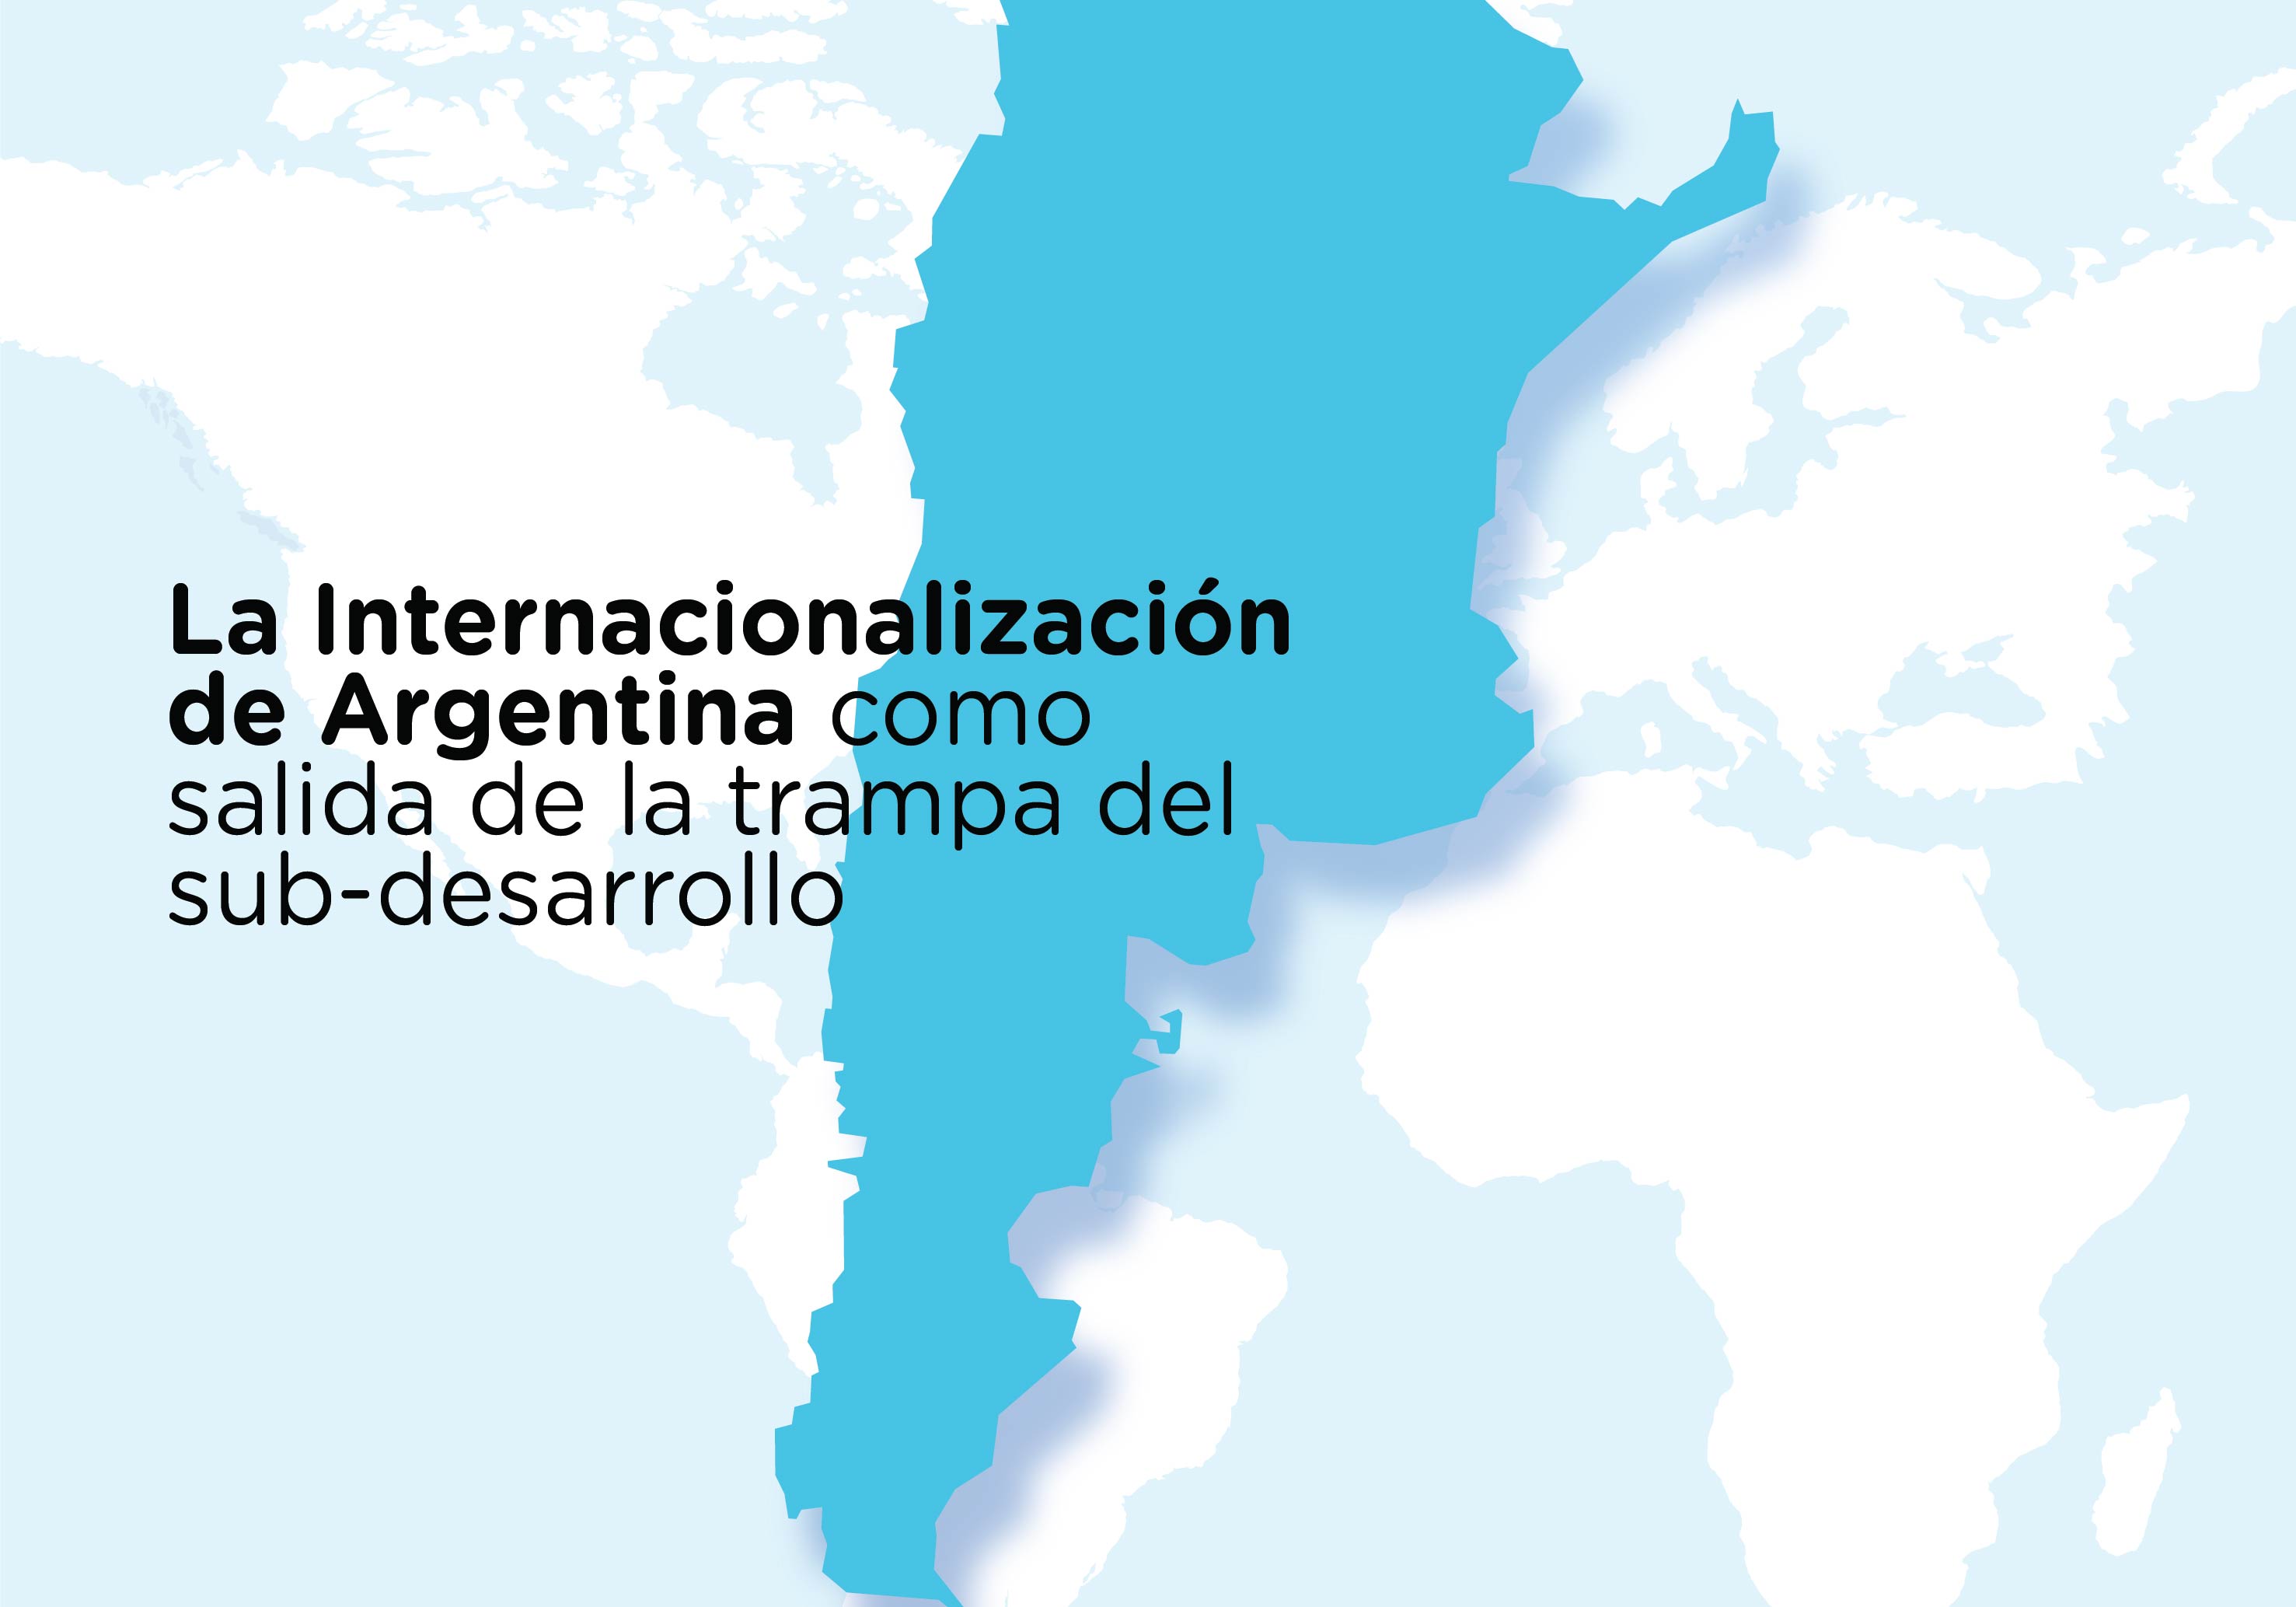 ¡Inscribite!  La internalización de Argentina como salida de la trampa del sub-desarrollo